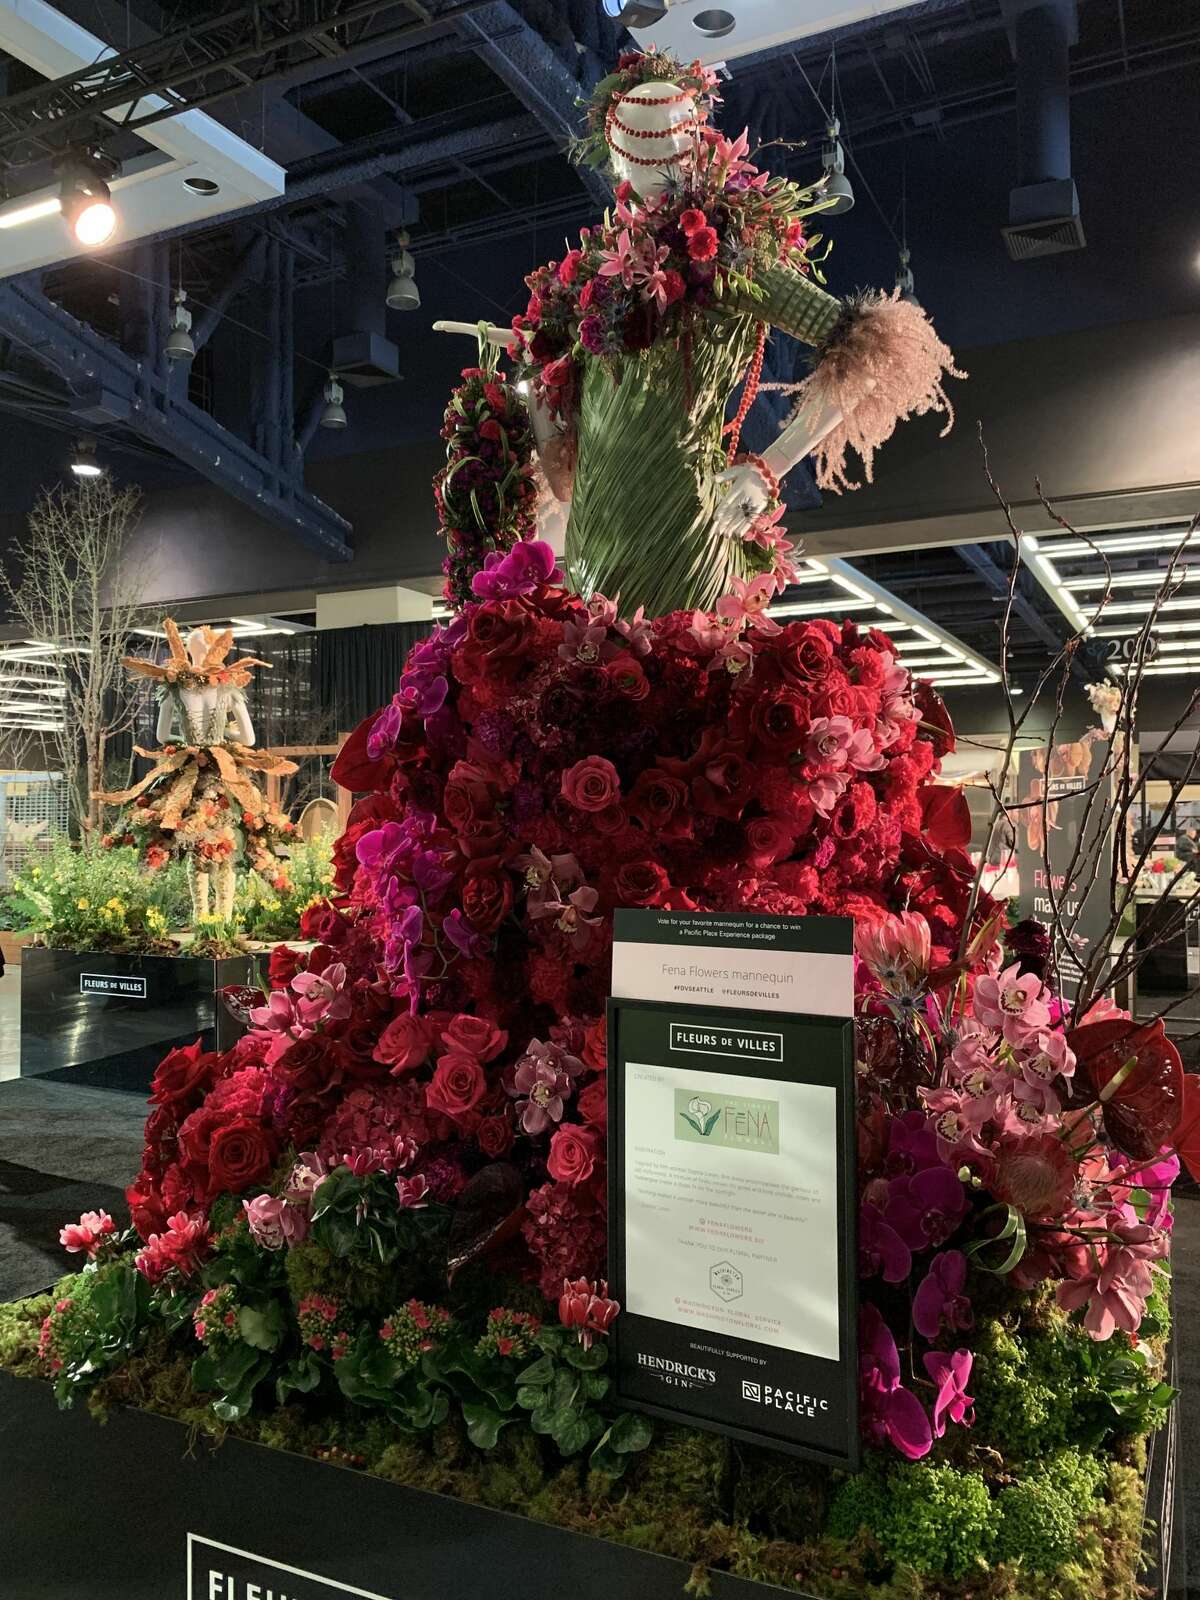 Get a sneak peak at Seattle's Northwest Flower and Garden Show